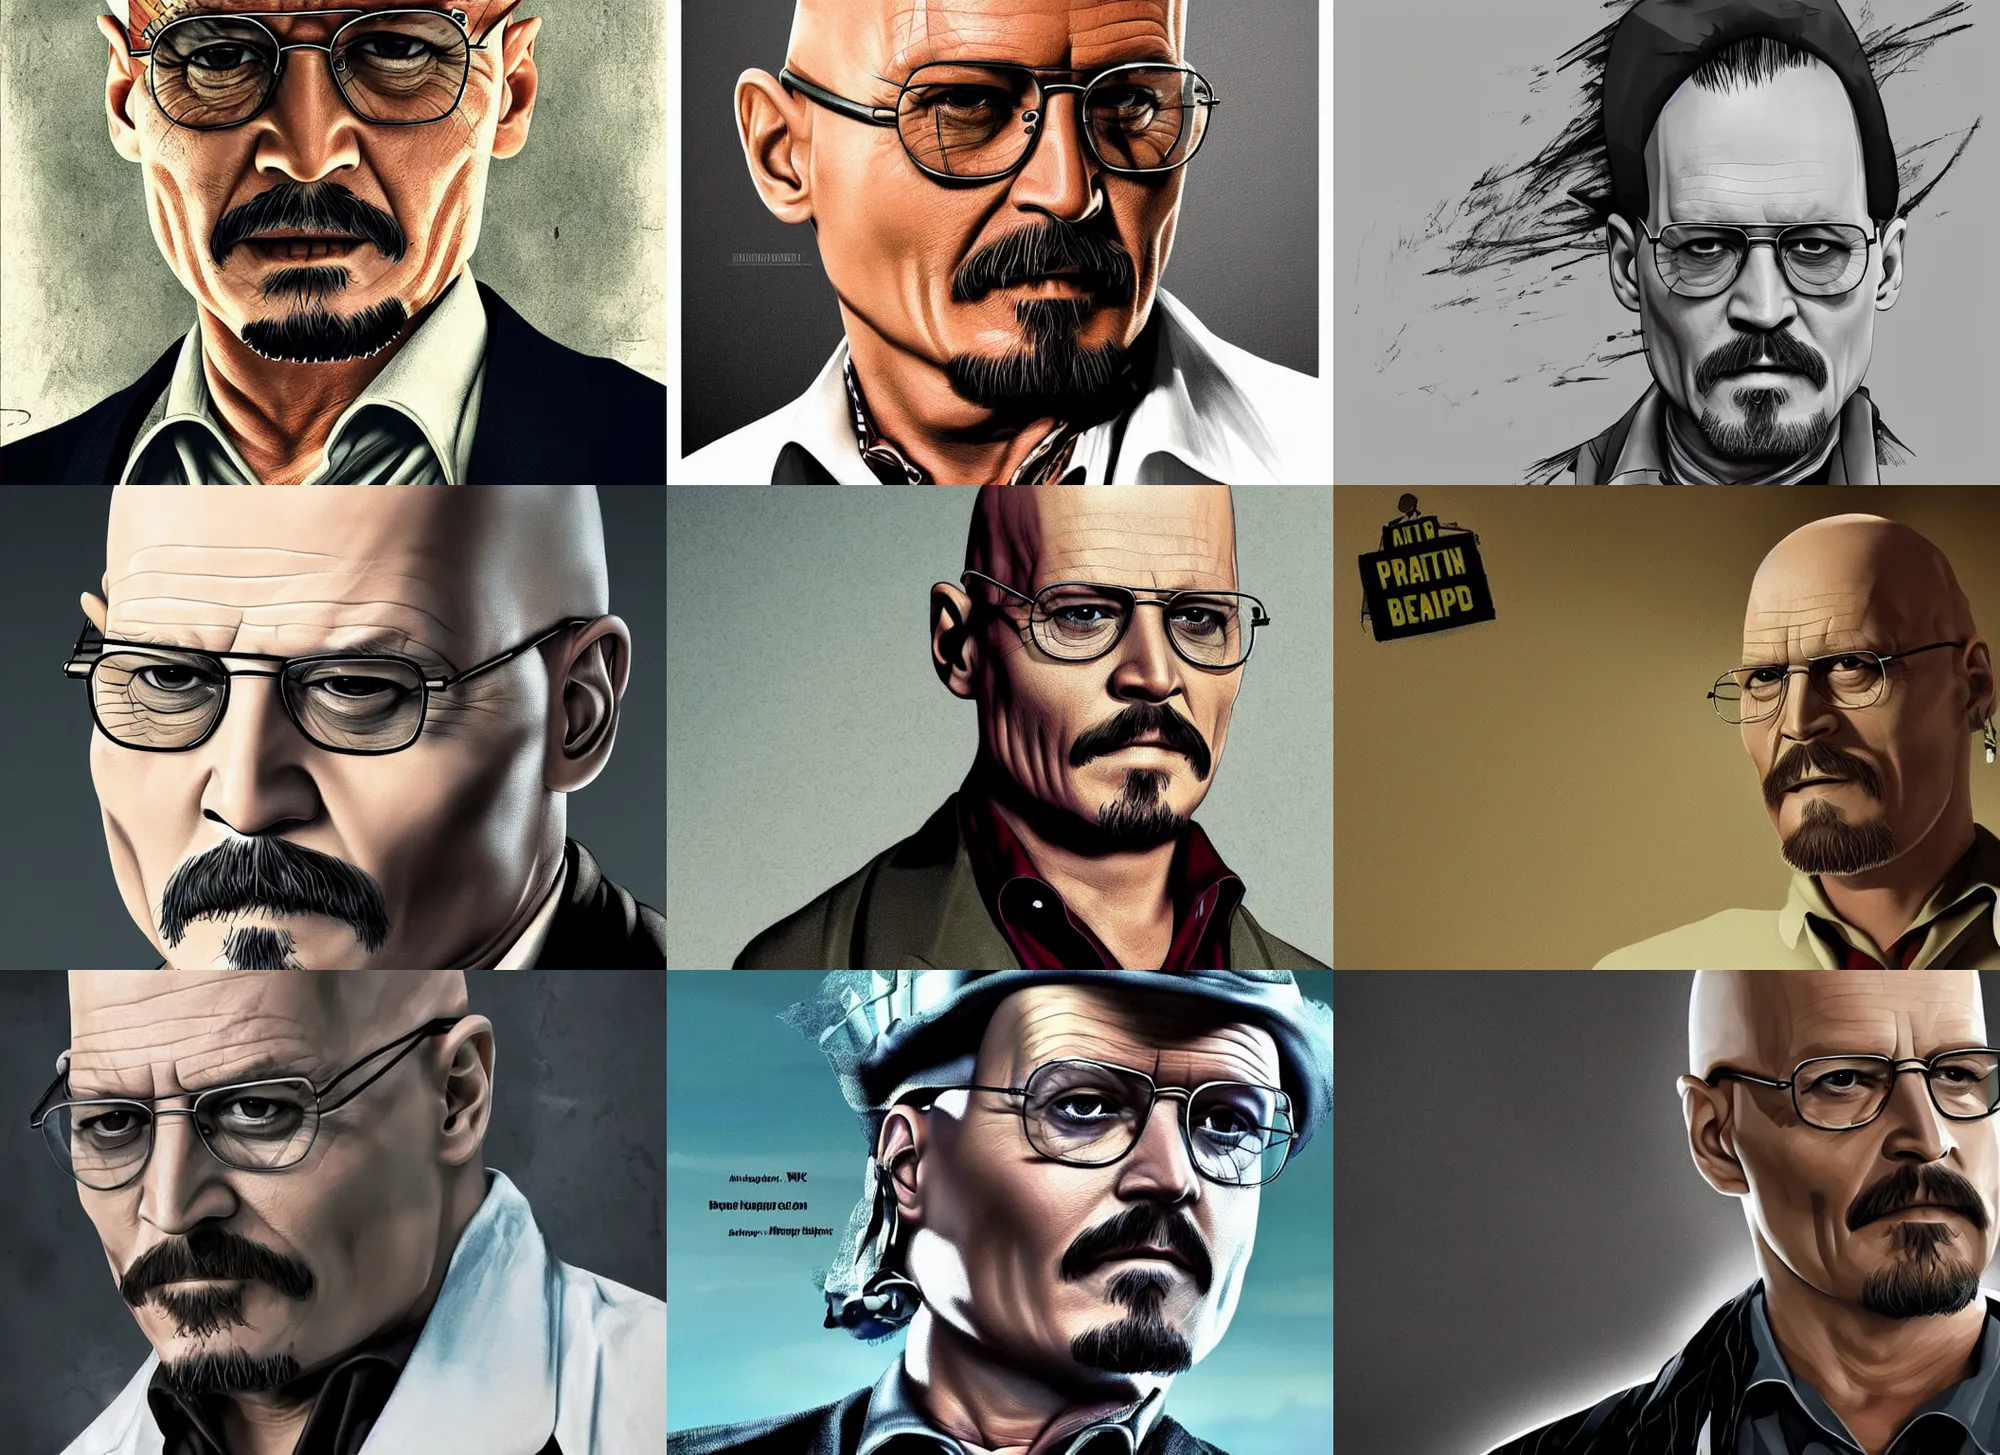 Prompt: bald Johnny Depp playing Walter White, promotional poster for Breaking Bad, digital art, trending on artstation, 4k